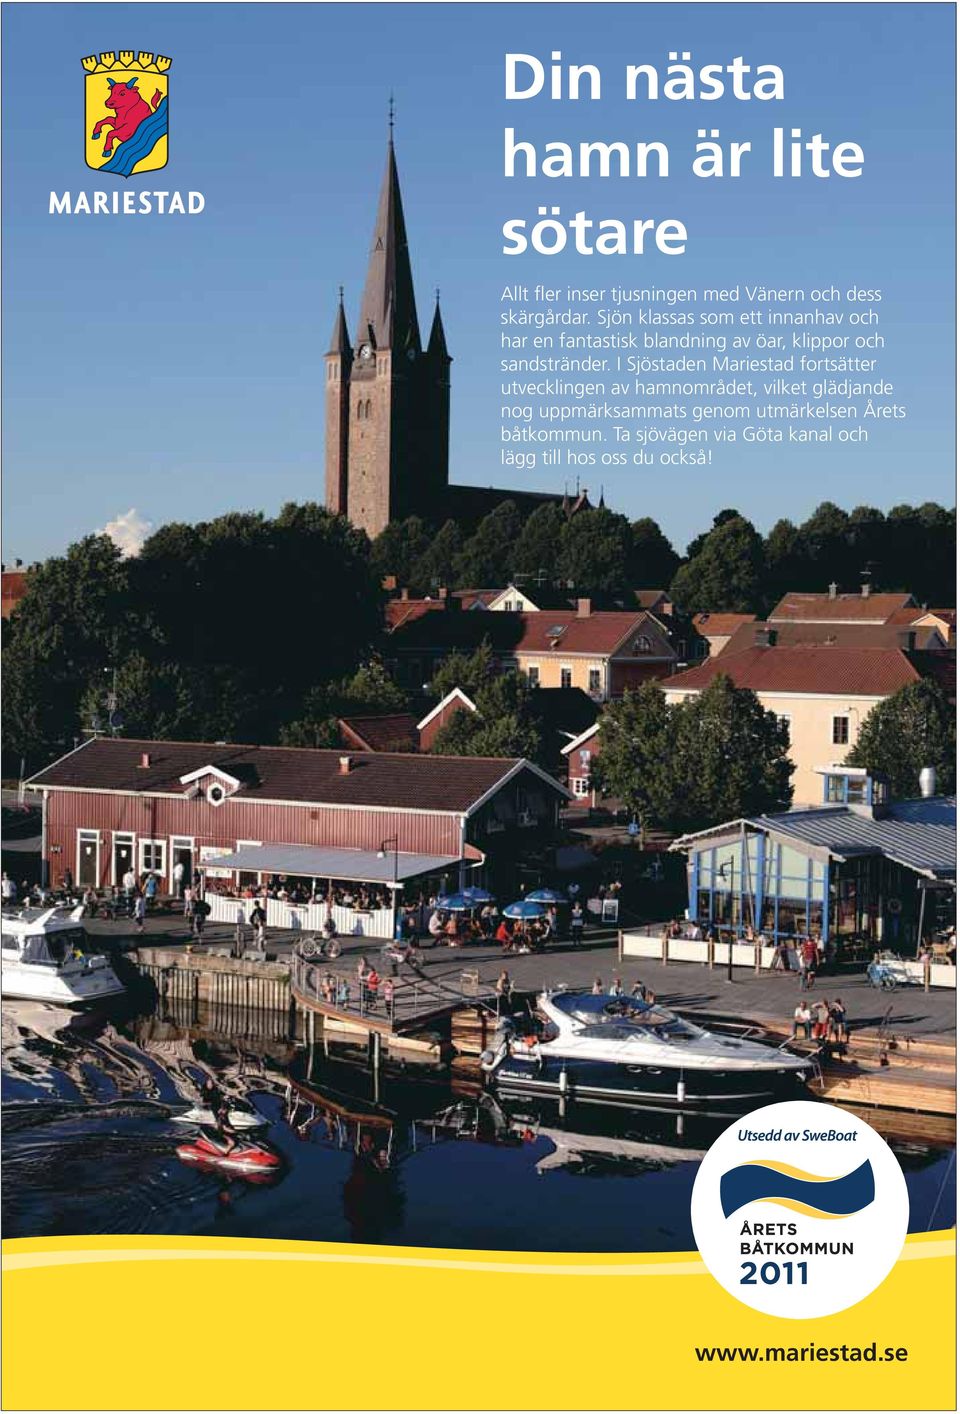 I Sjöstaden Mariestad fortsätter utvecklingen av hamnområdet, vilket glädjande nog uppmärksammats